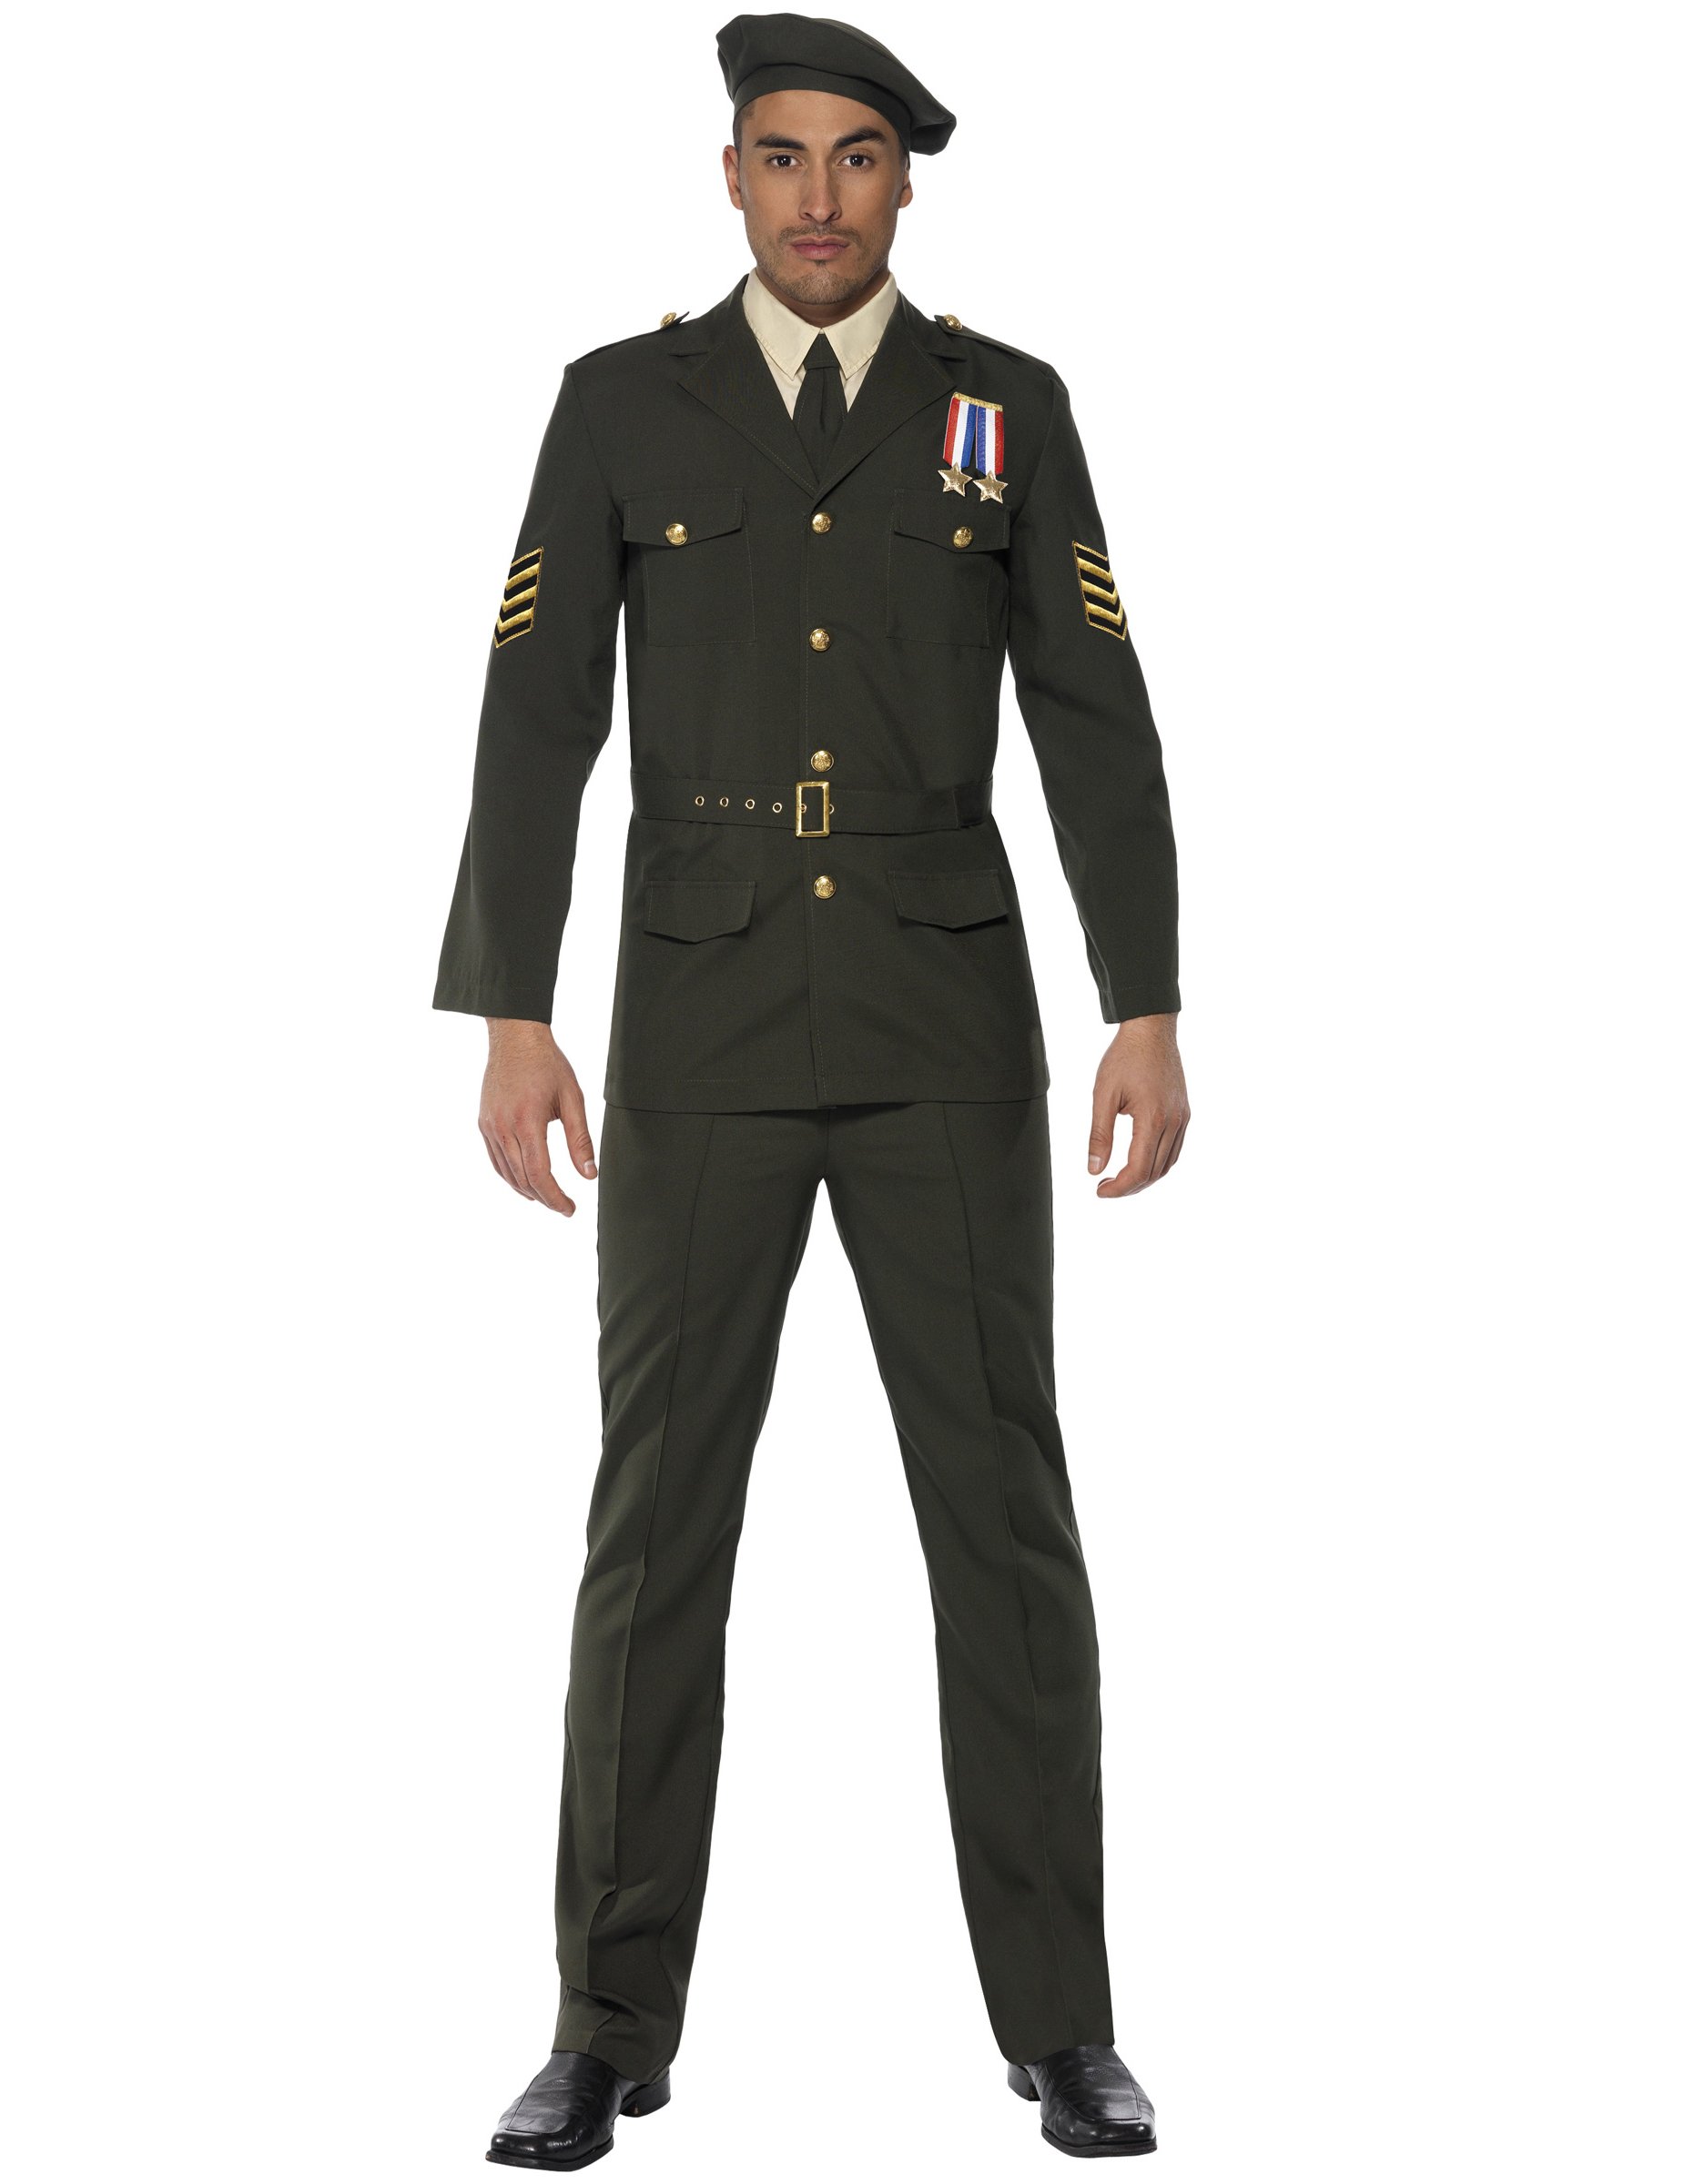 Offizier Kostüm Uniform grün von SMIFFY'S